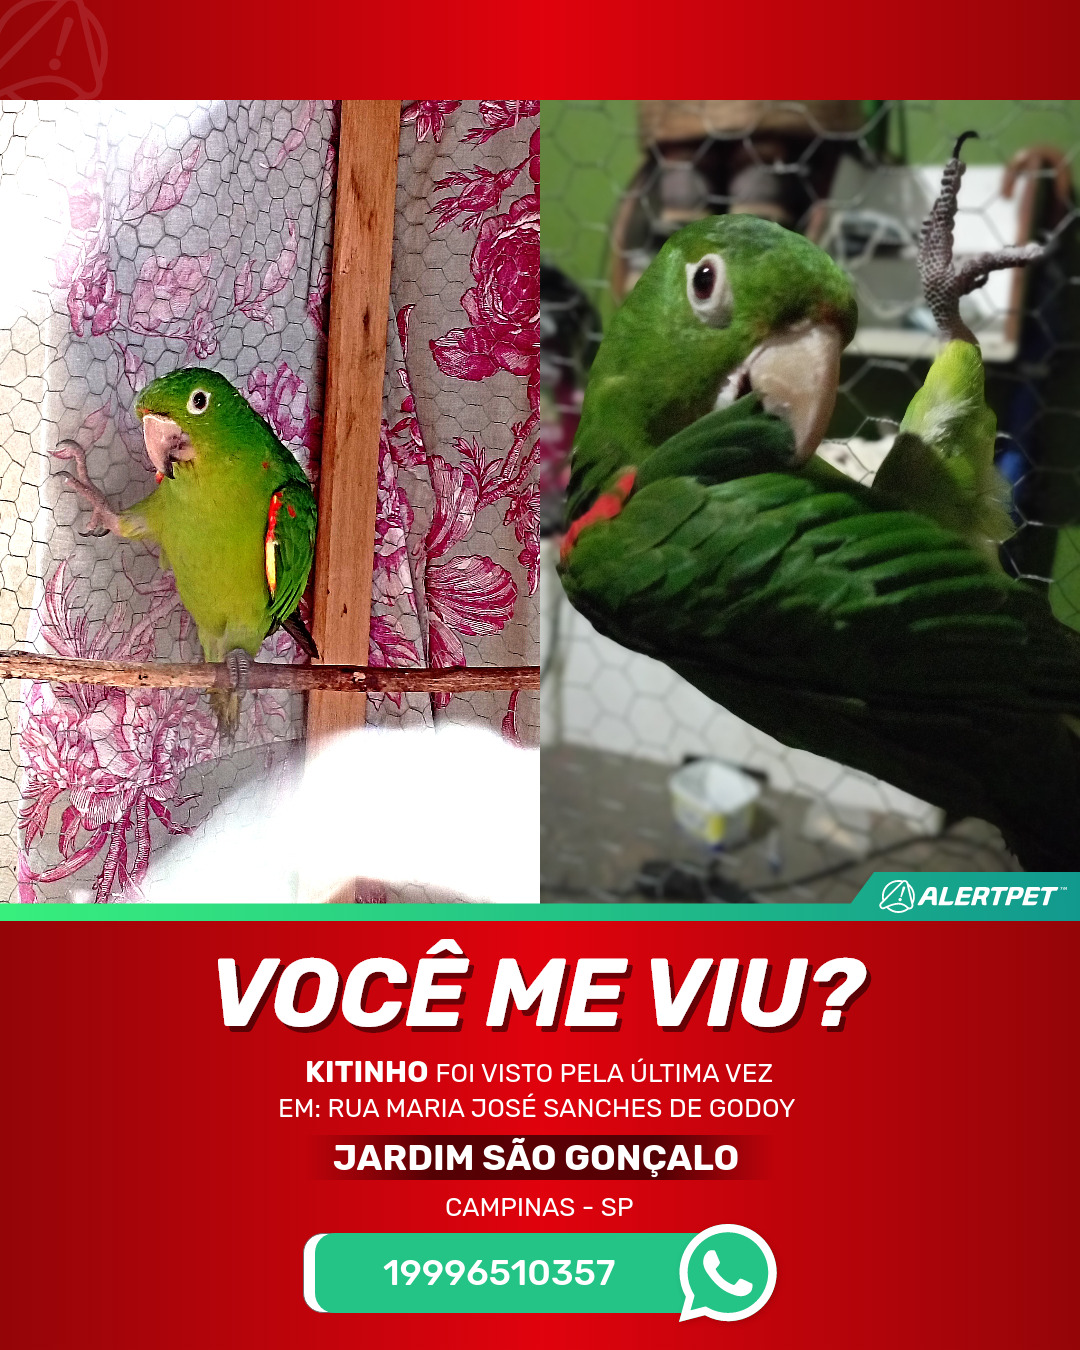 Cabeça de Ameixa Campinas SP - Pássaros - Campinas - Compra & Venda